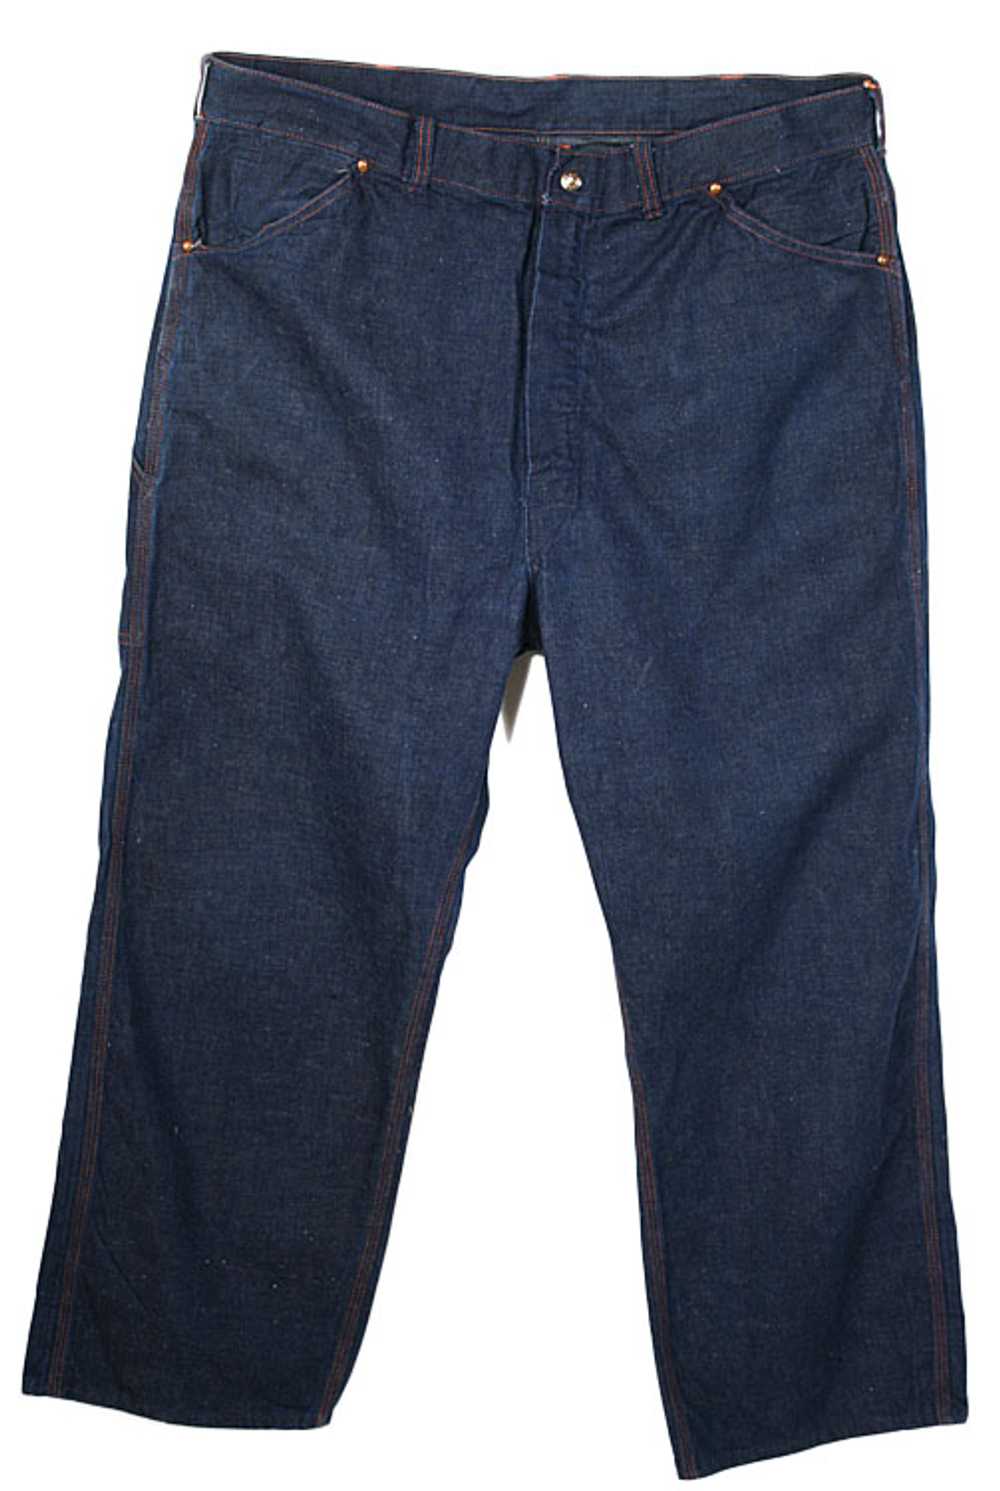 1950s Blue Jeans - image 1